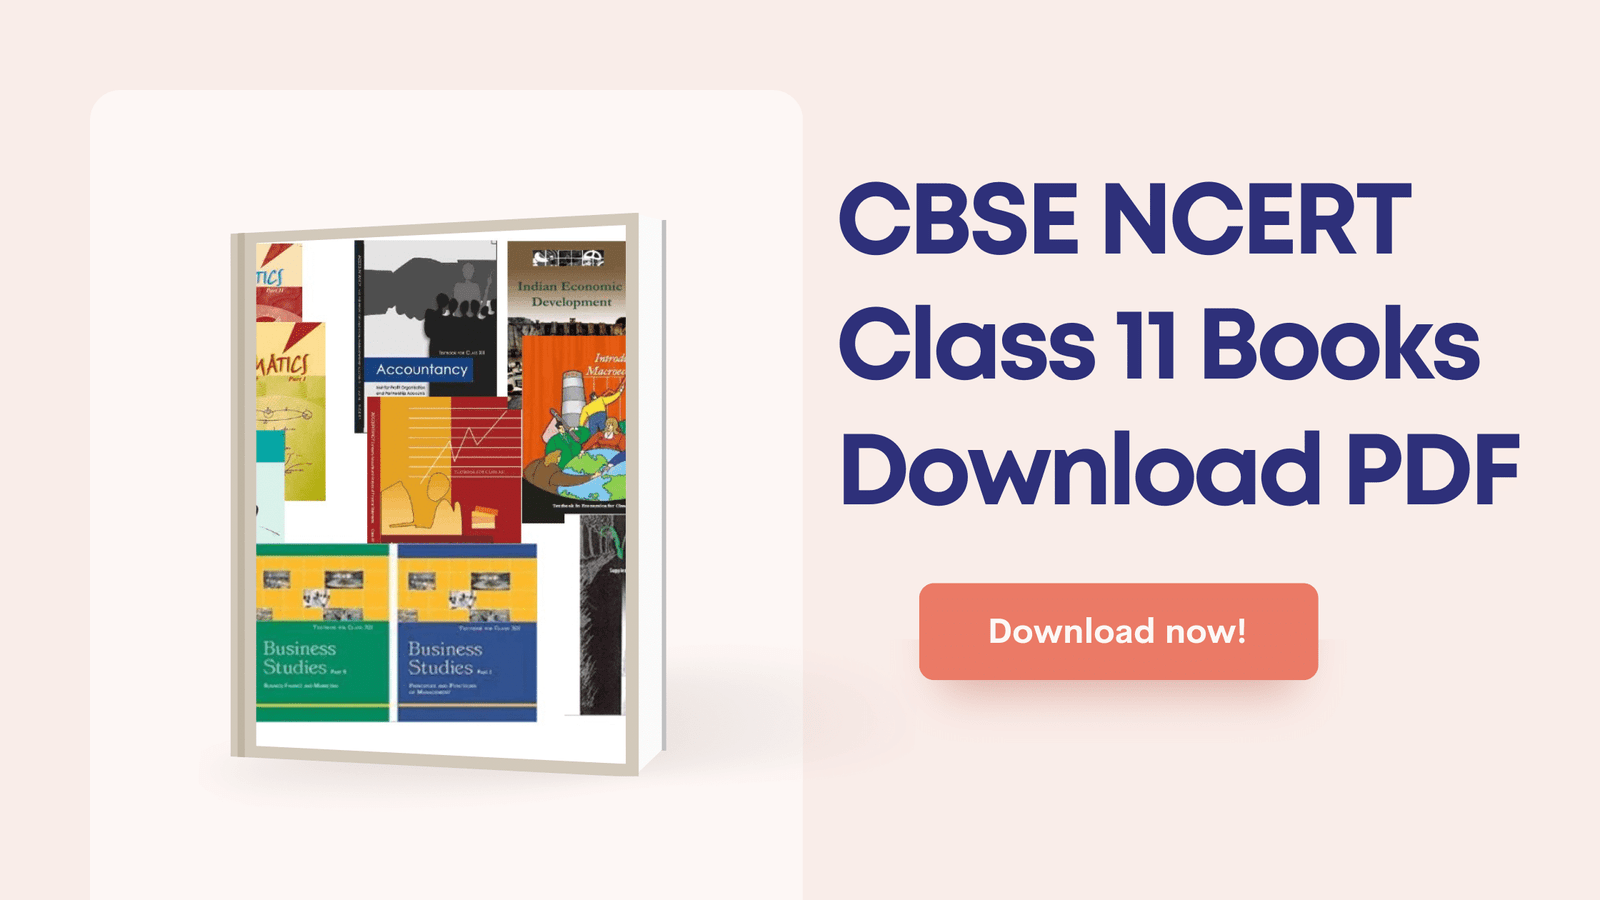 CBSE NCERT Class 11 Books Download PDF